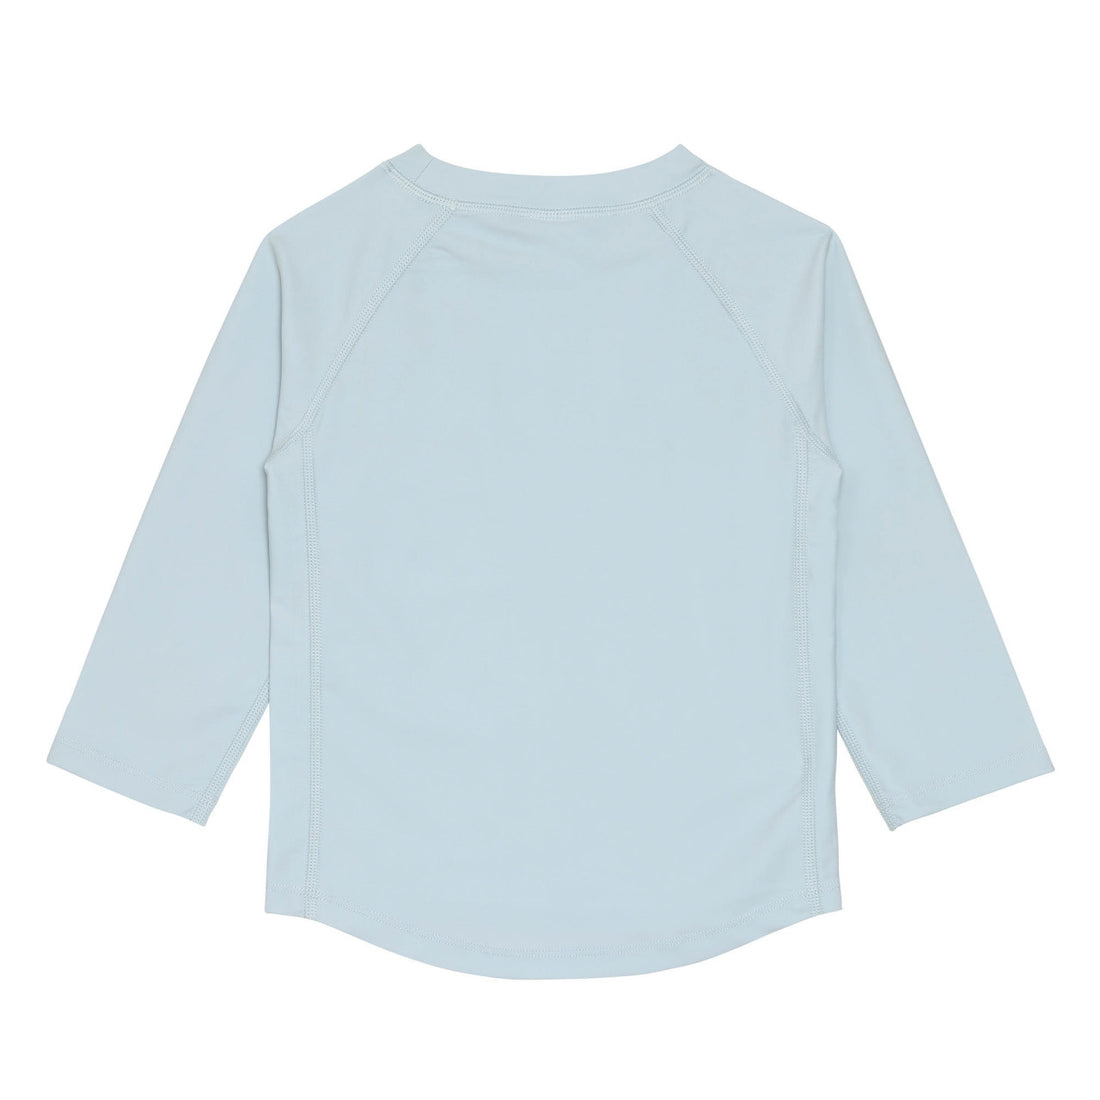 Lässig - Baby Badeshirt UV Shirt langarm Löwe blau